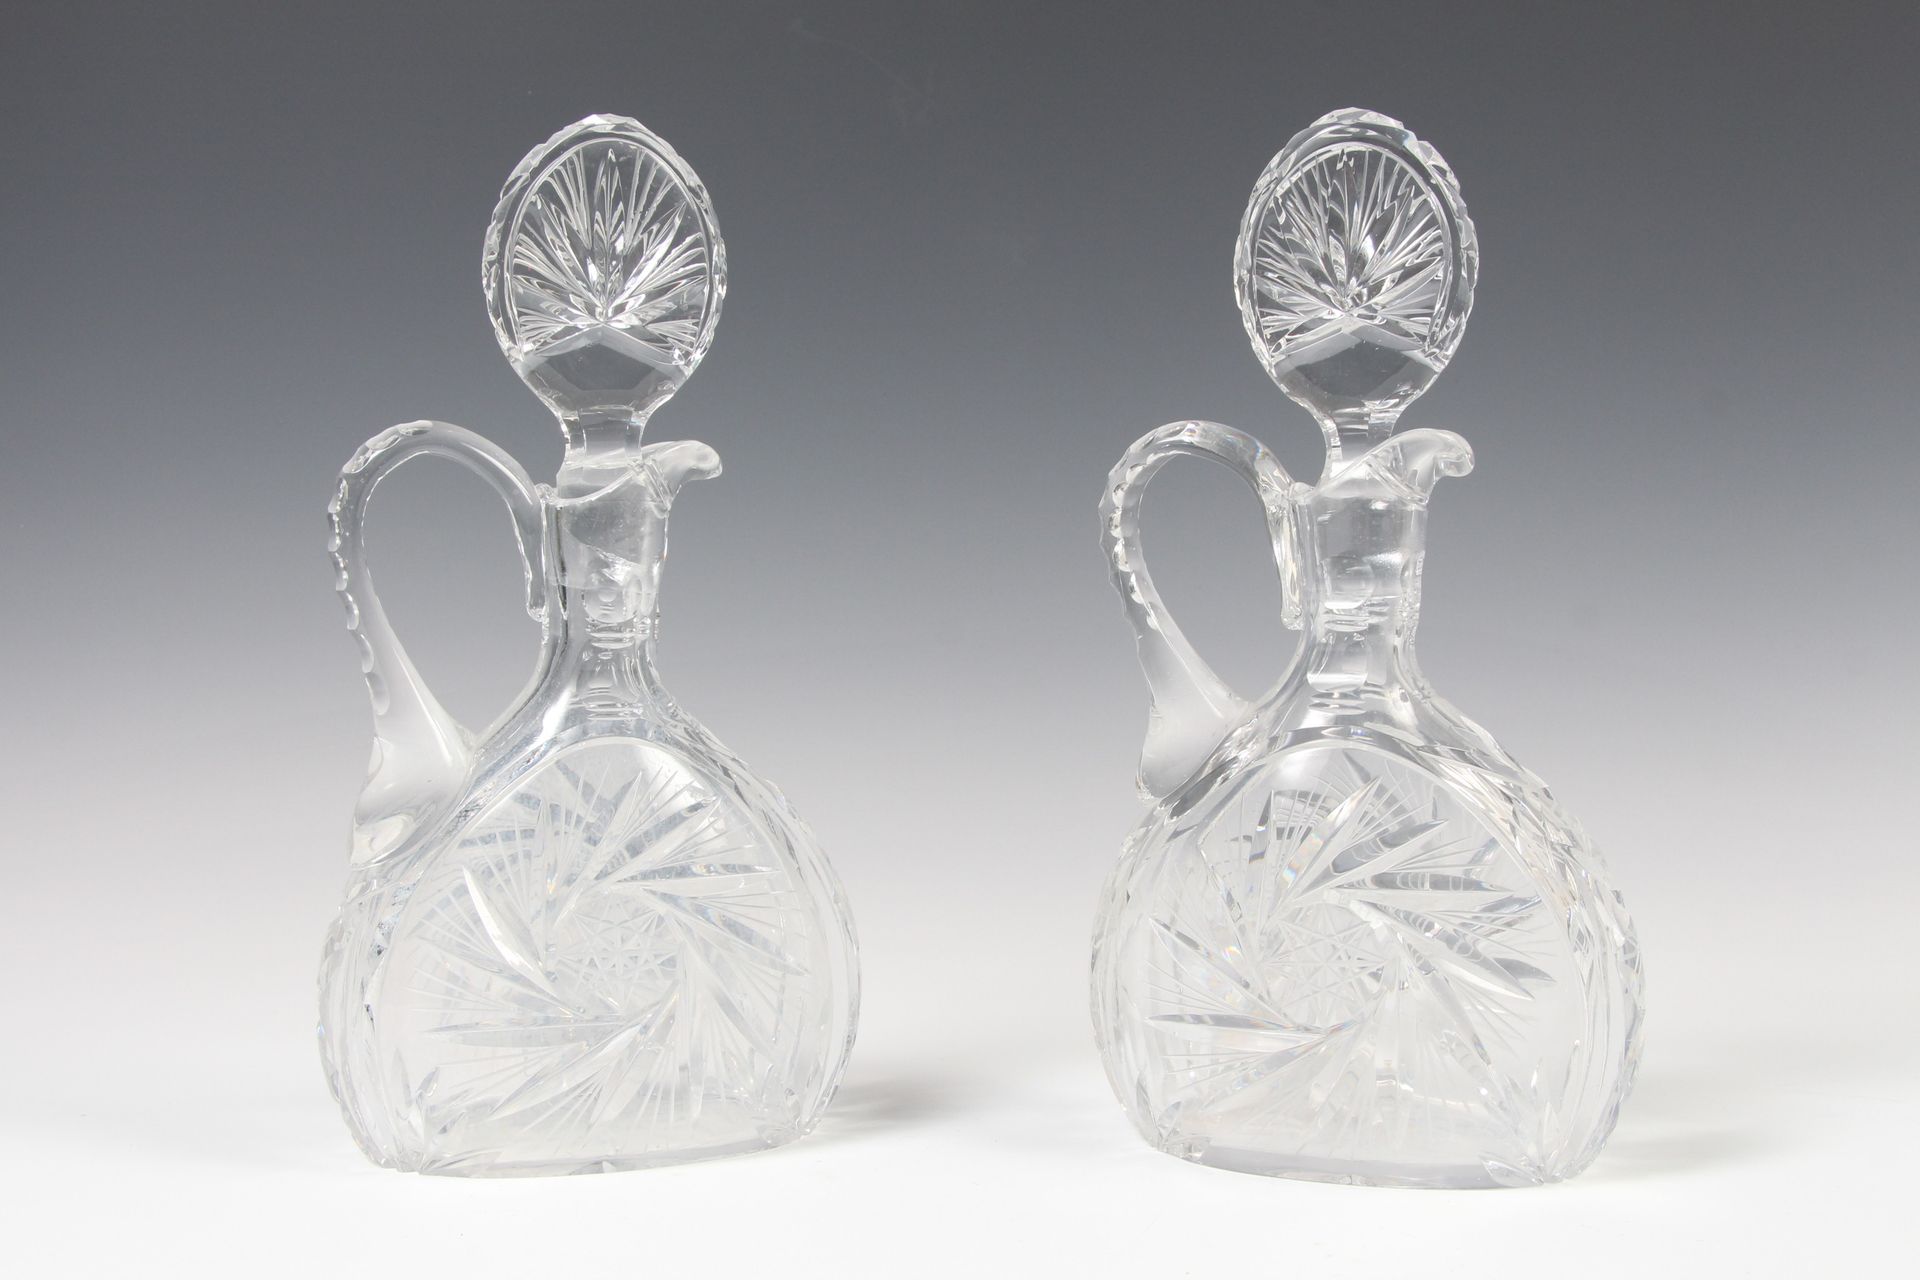 Null 两个切割水晶花瓶形状的水杯。

高度：27厘米

(一个瓶塞损坏，底座上有很小的缺口)